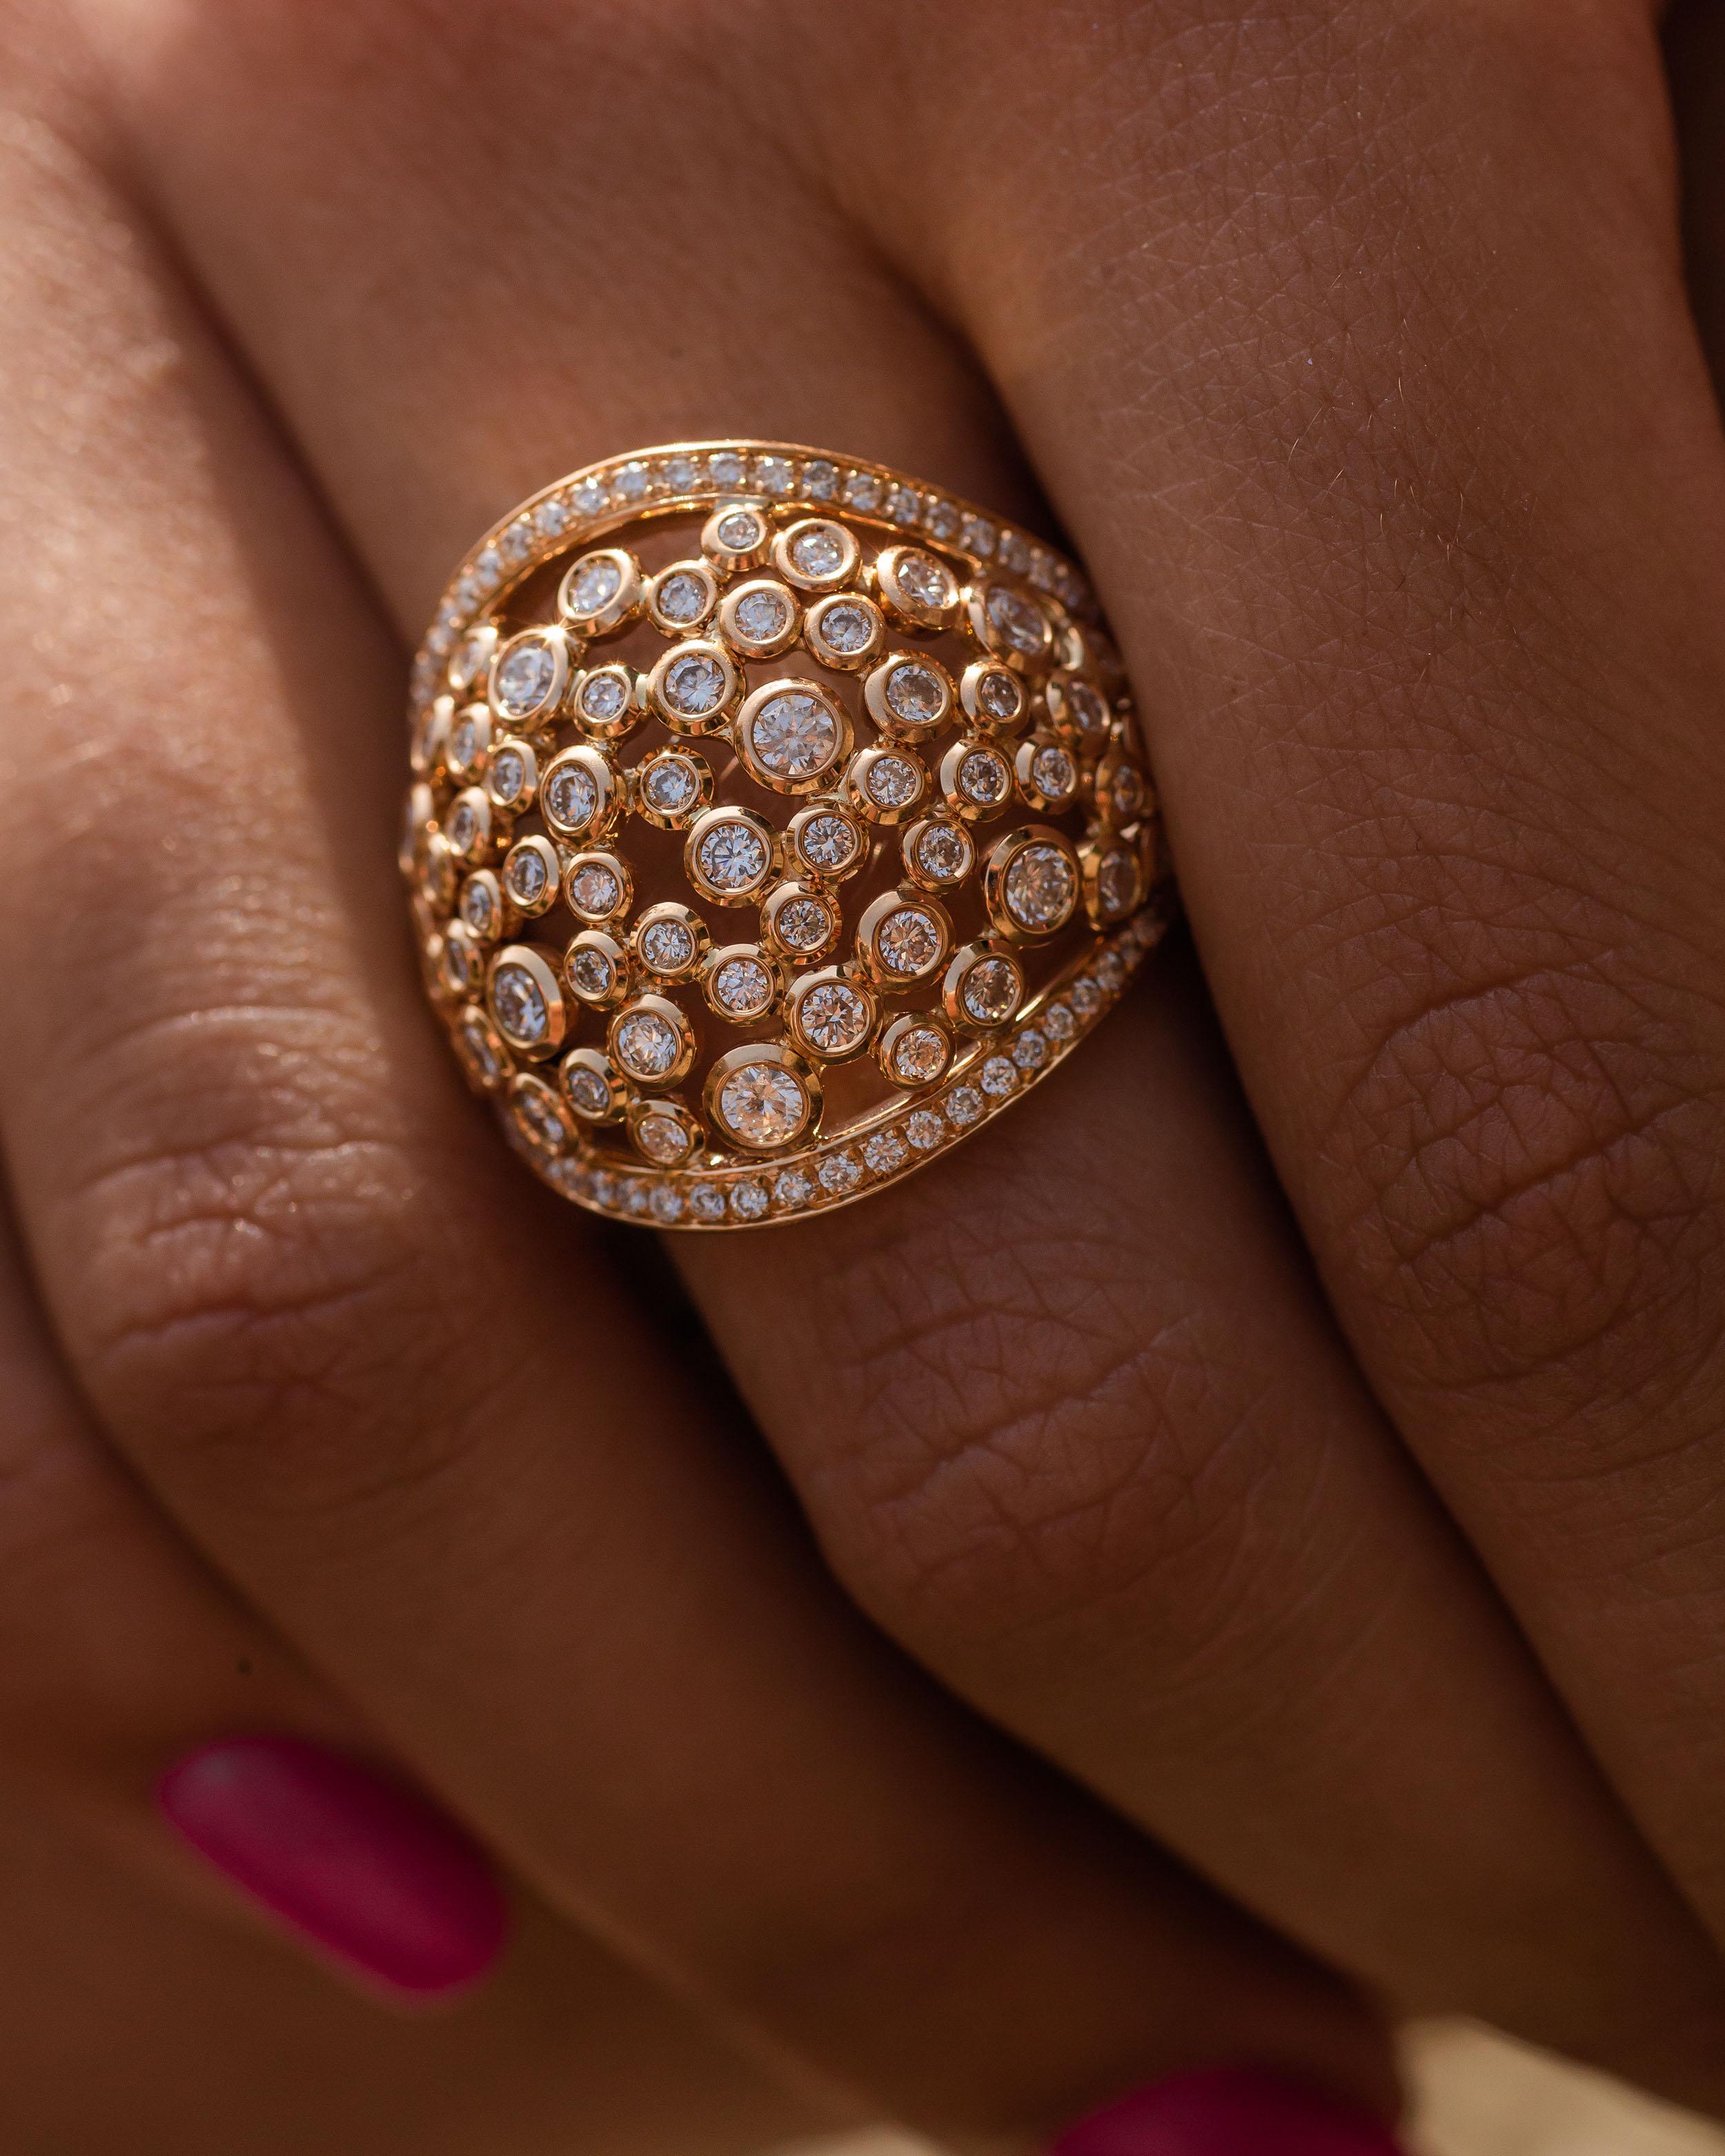 la bague en or rose 18K est de la collection Sirène. Il s'agit d'une délicate création de diamants naturels ronds incolores d'une valeur totale de 1,96 carat. Le poids total du métal est de 9,20 gr.  Une belle addition à n'importe quel look !


La